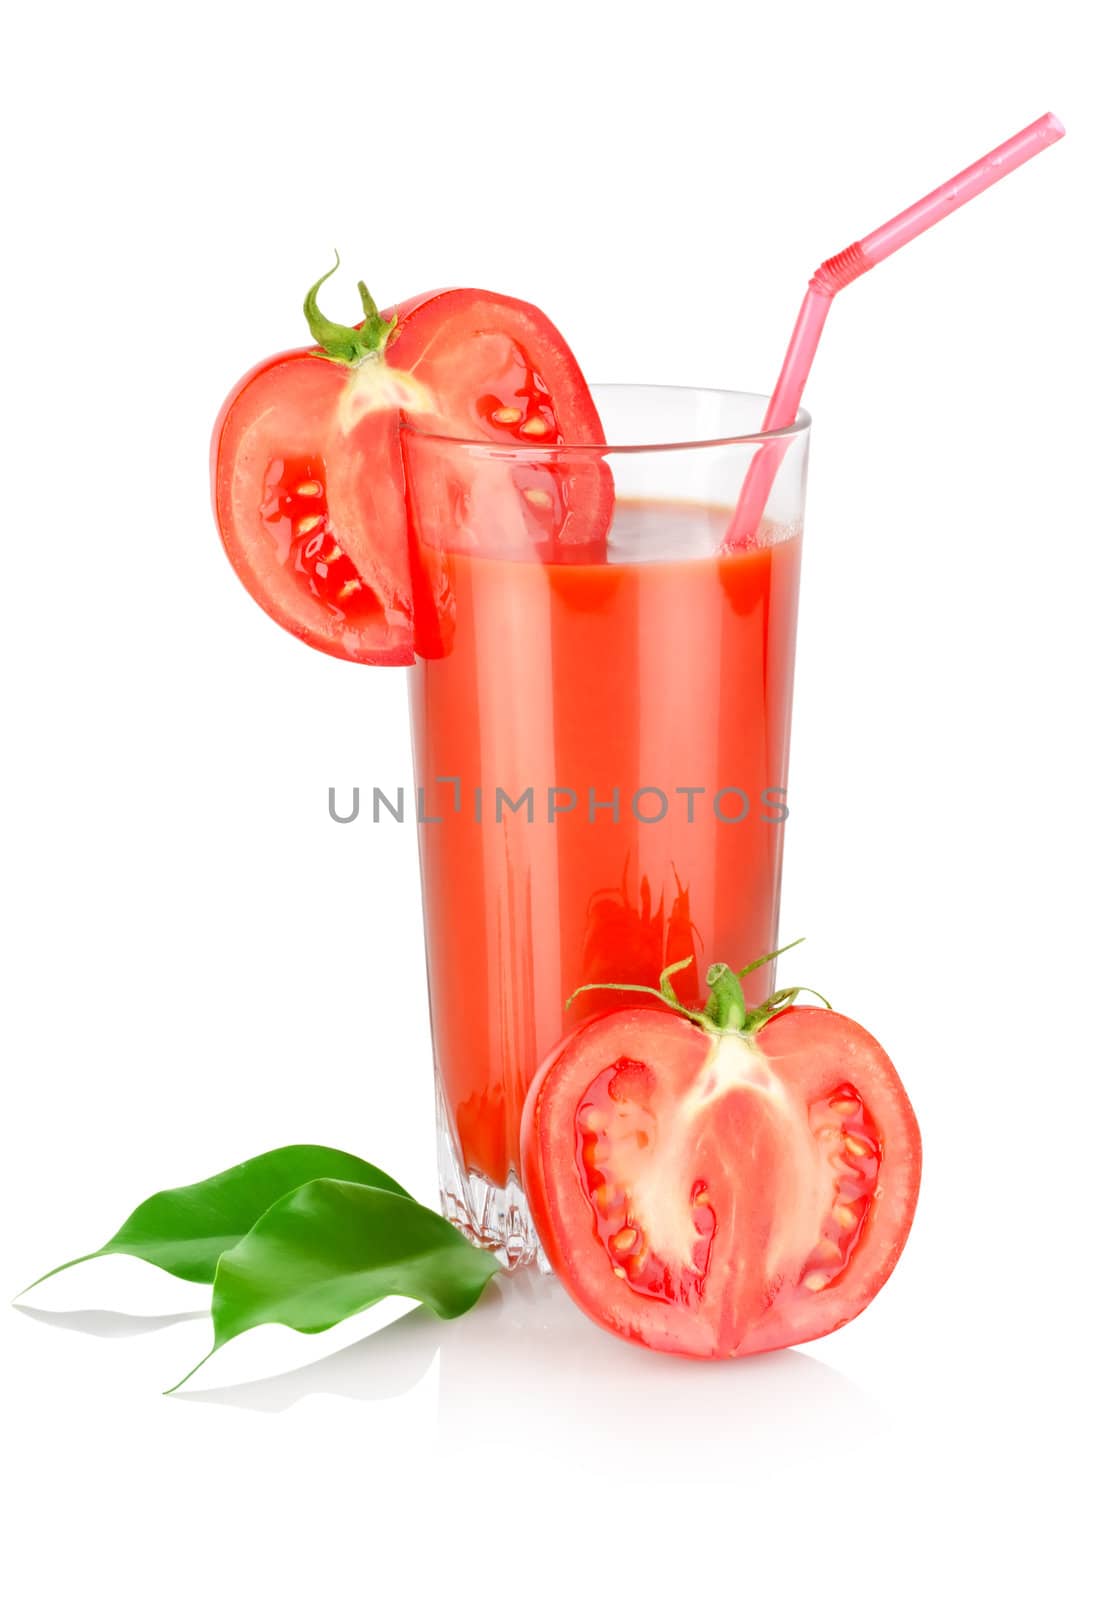 Tomato juice and tomato isolated on white background